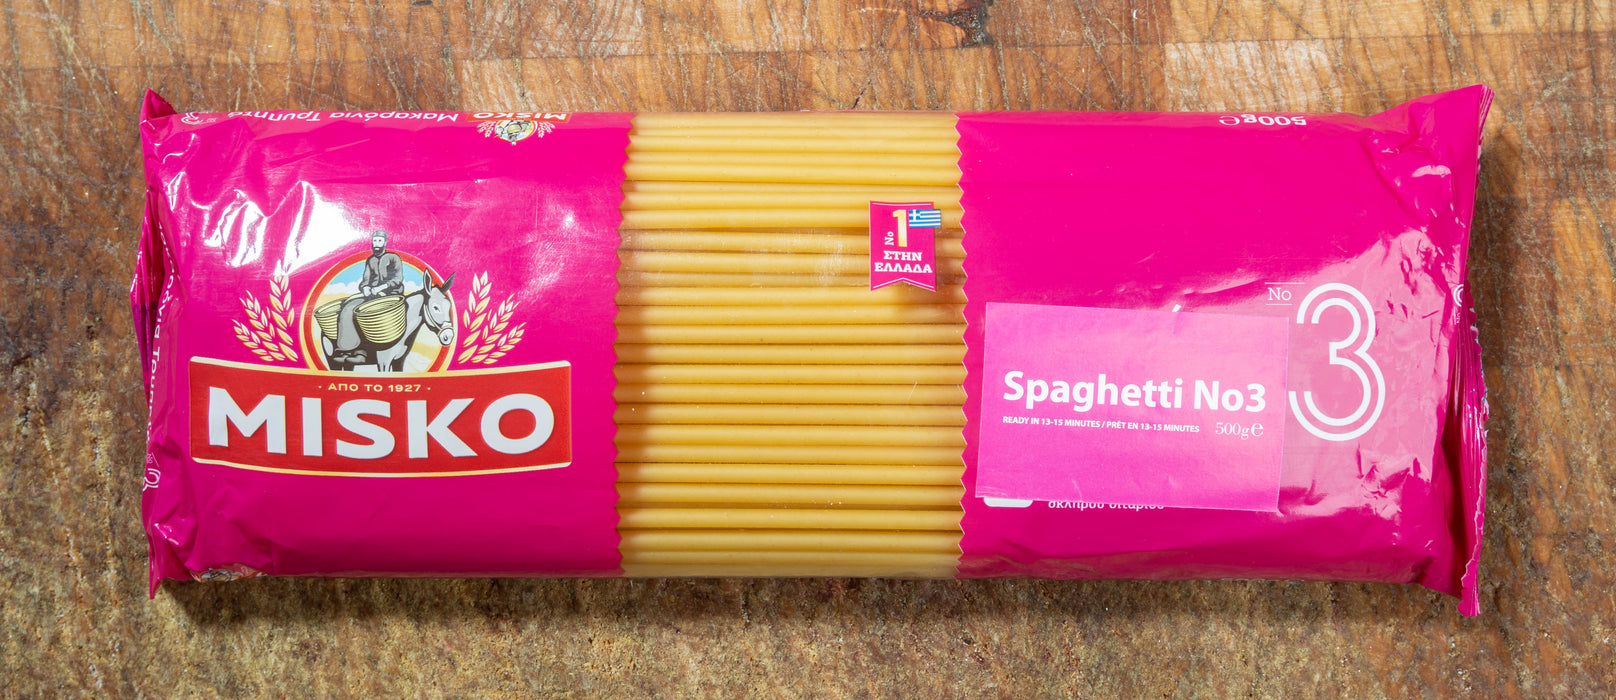 Misko Spaghetti no3